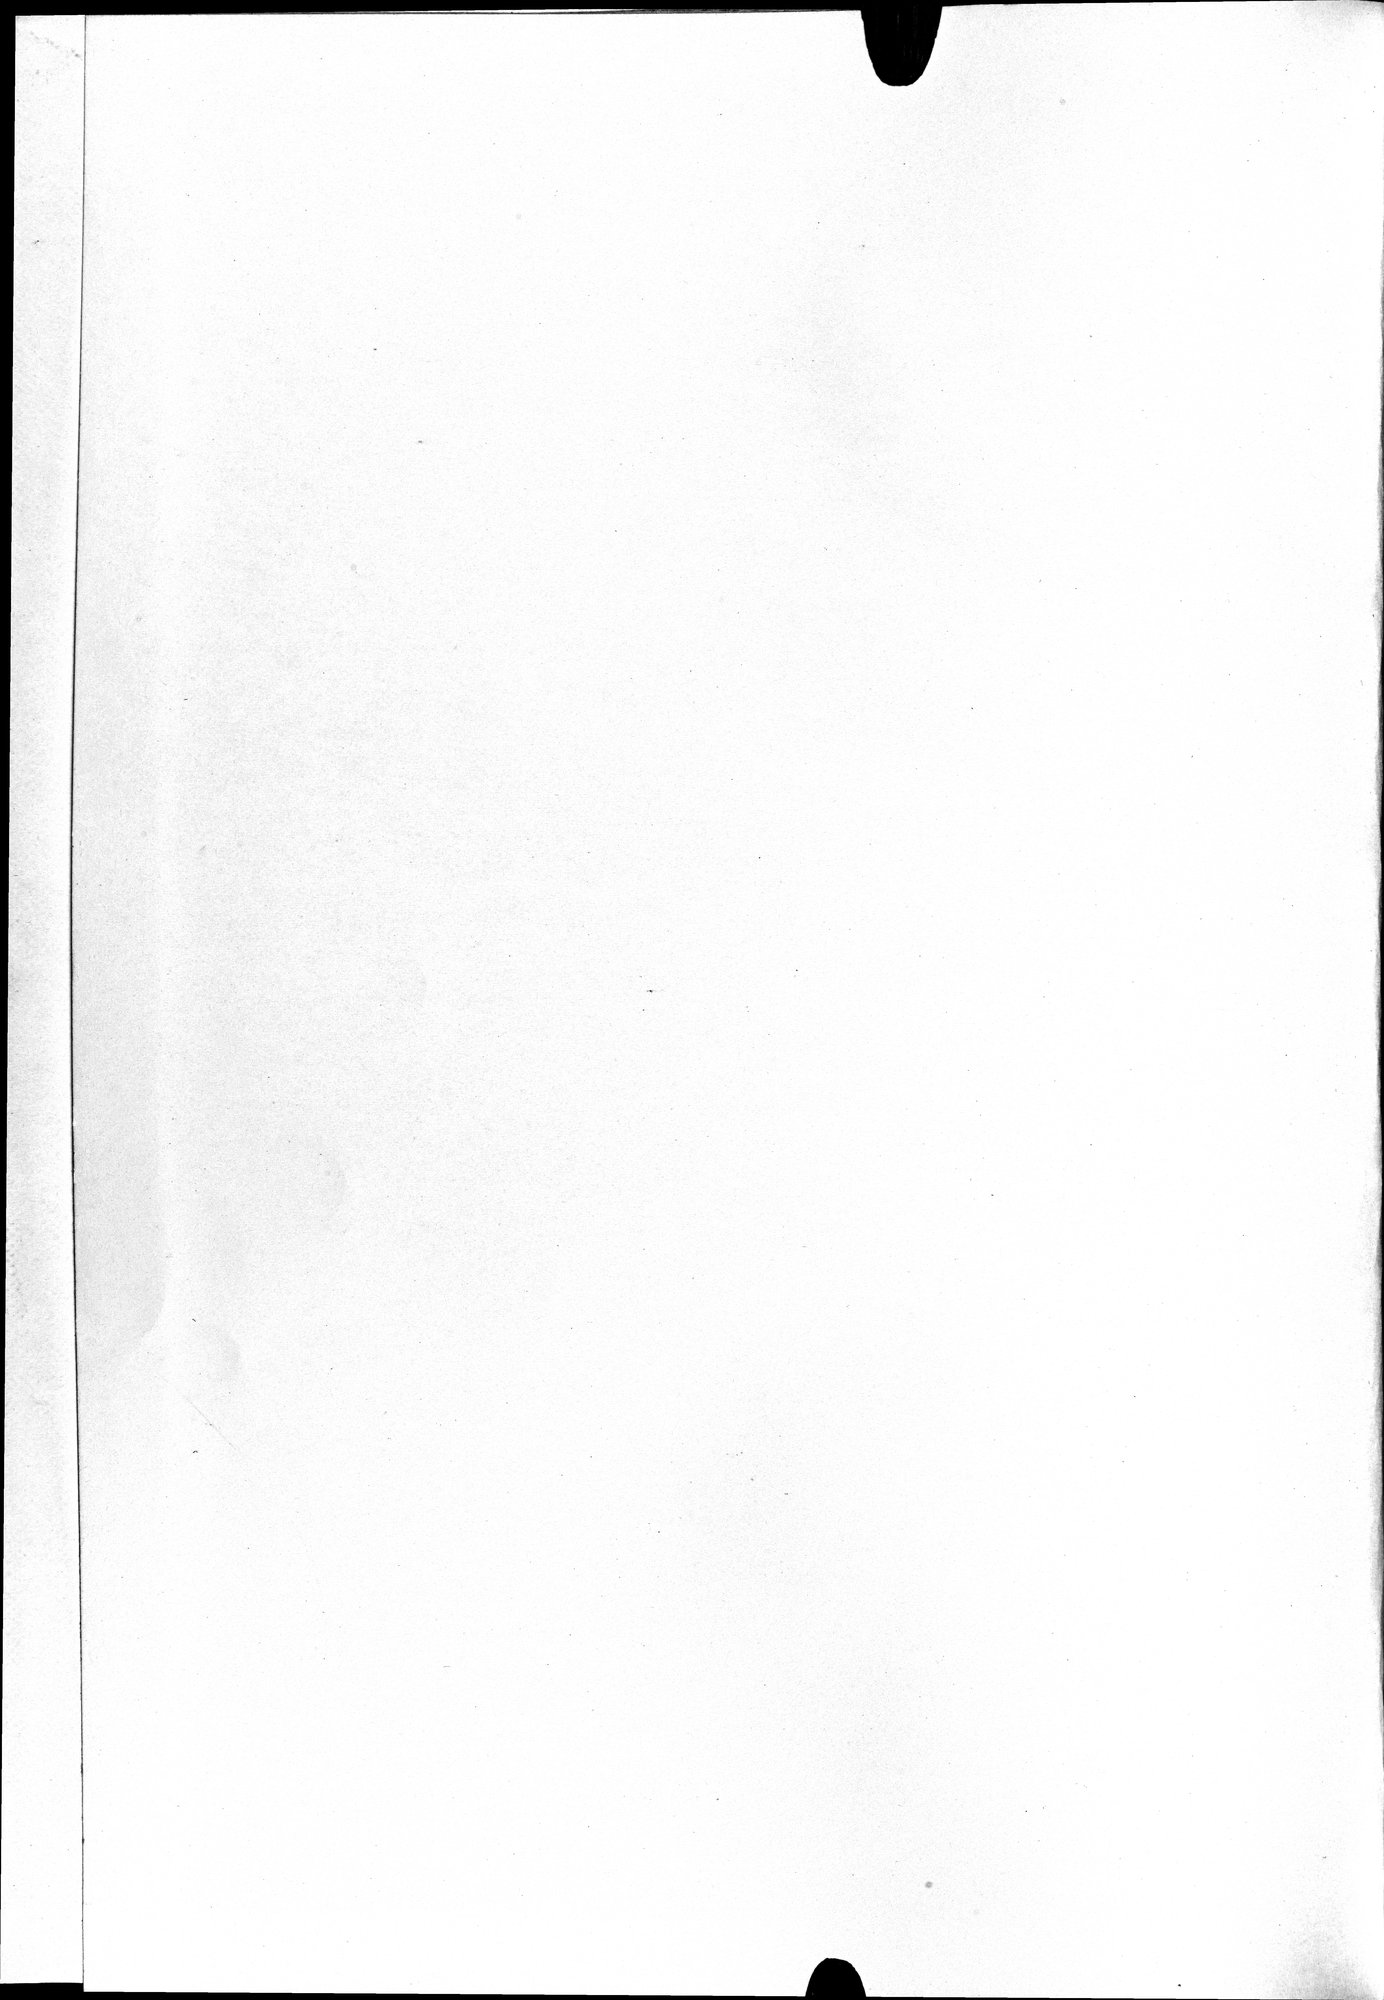 羅布淖爾考古記 : vol.1 / Page 393 (Grayscale High Resolution Image)